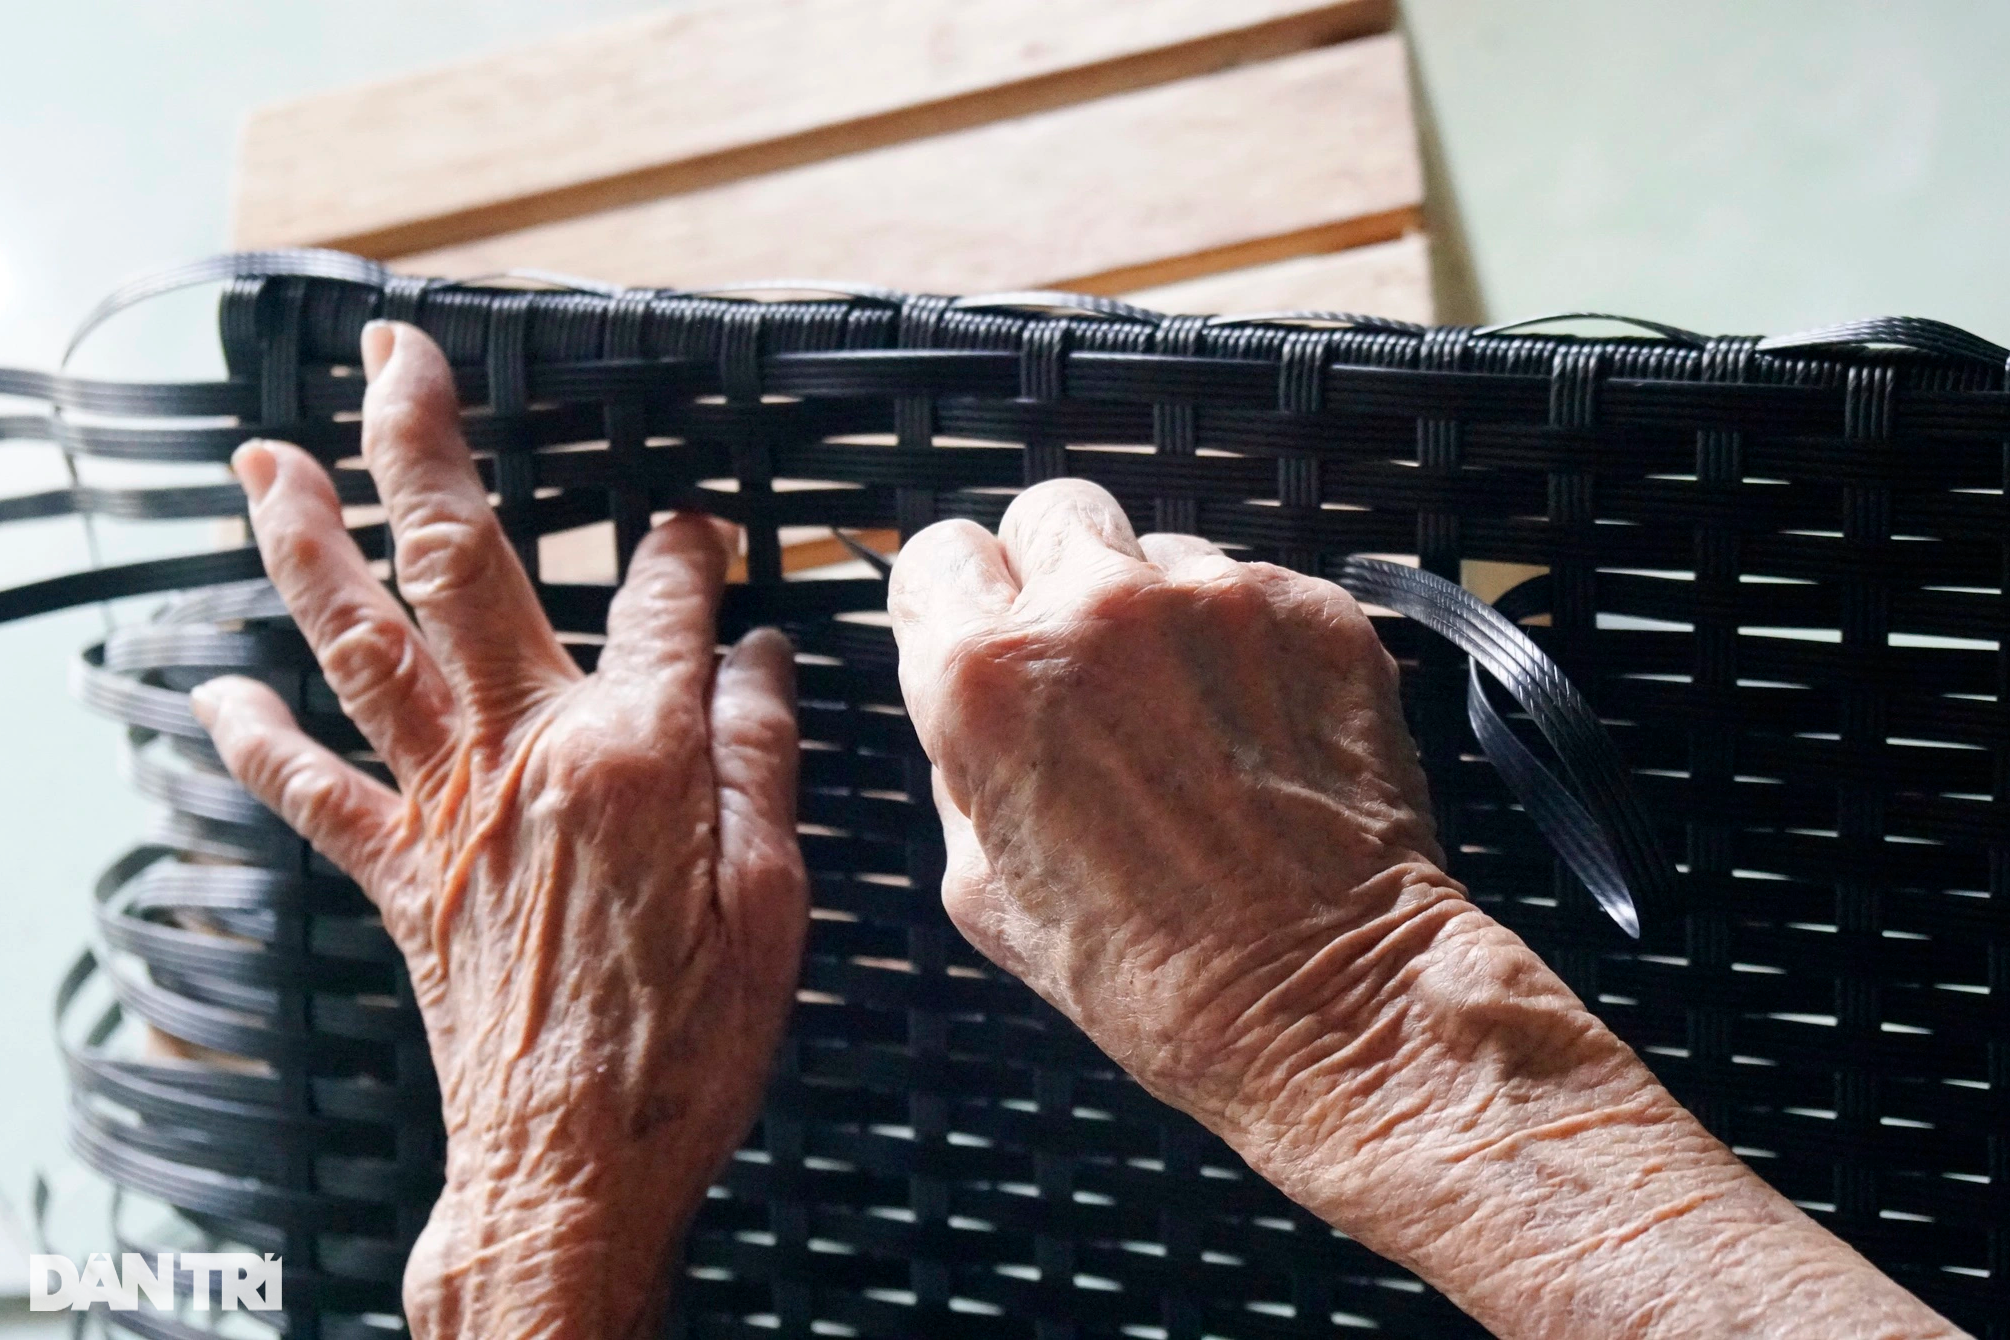 Cụ bà 90 tuổi miệt mài đan đồ nhựa để đỡ phụ thuộc, làm phiền con cháu - 3